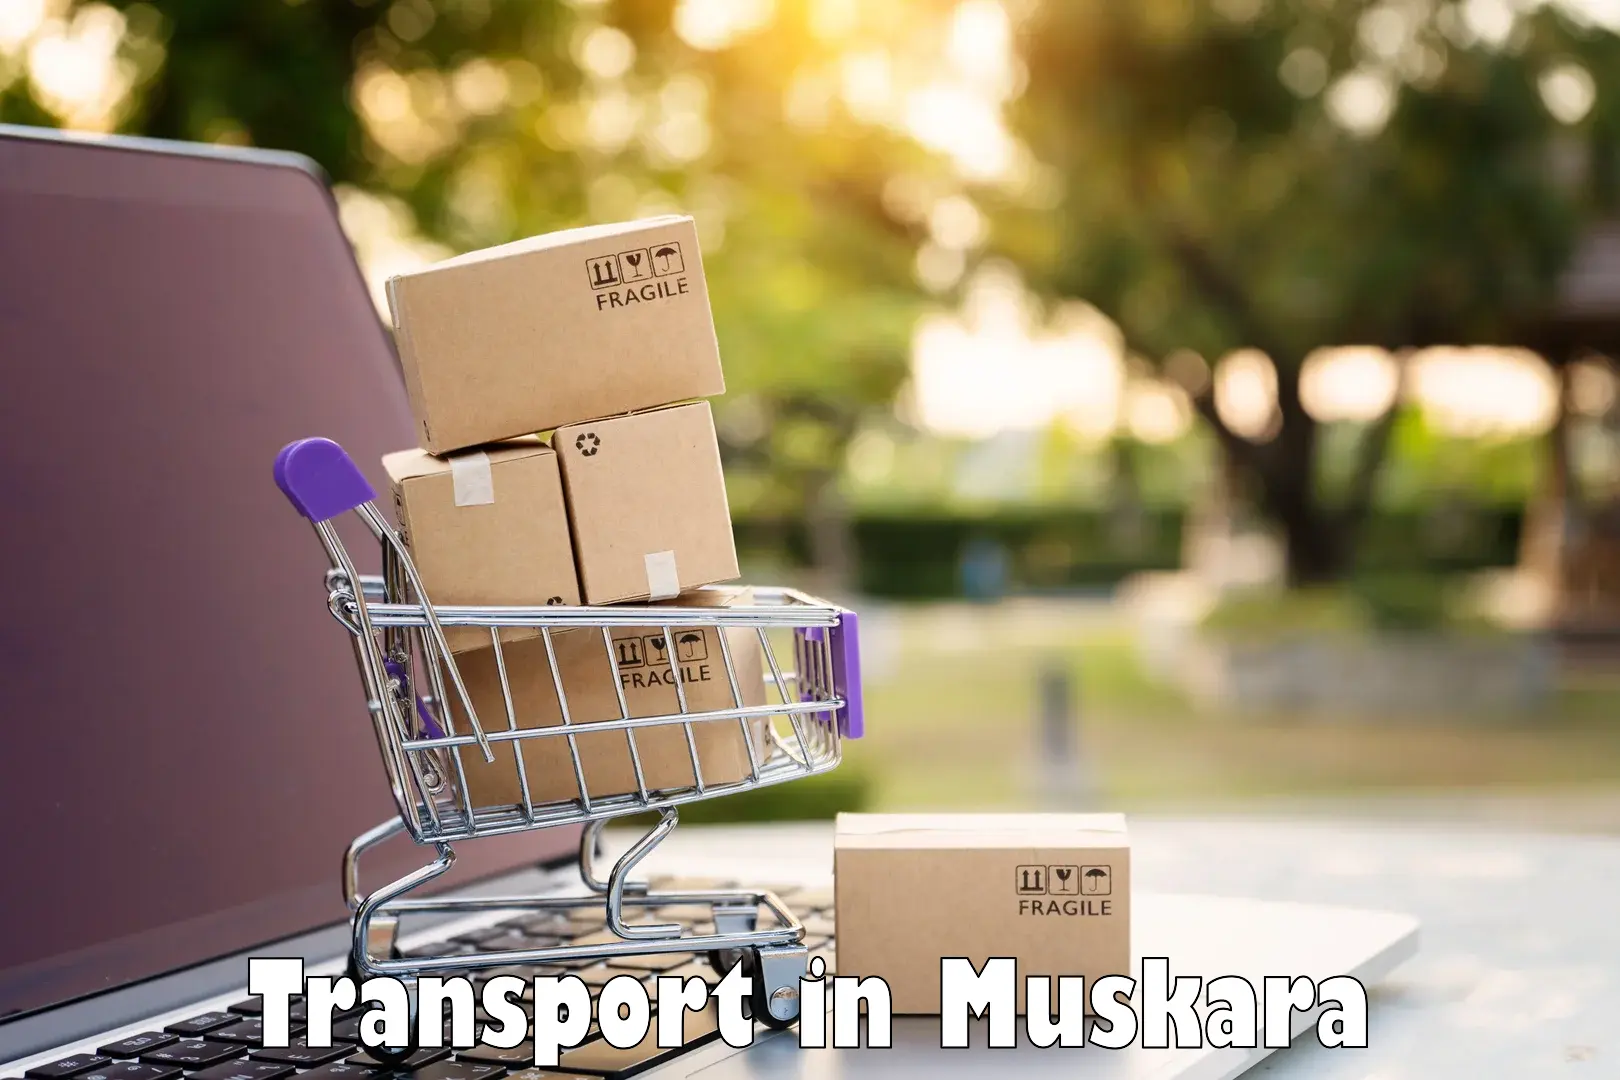 Daily transport service in Muskara